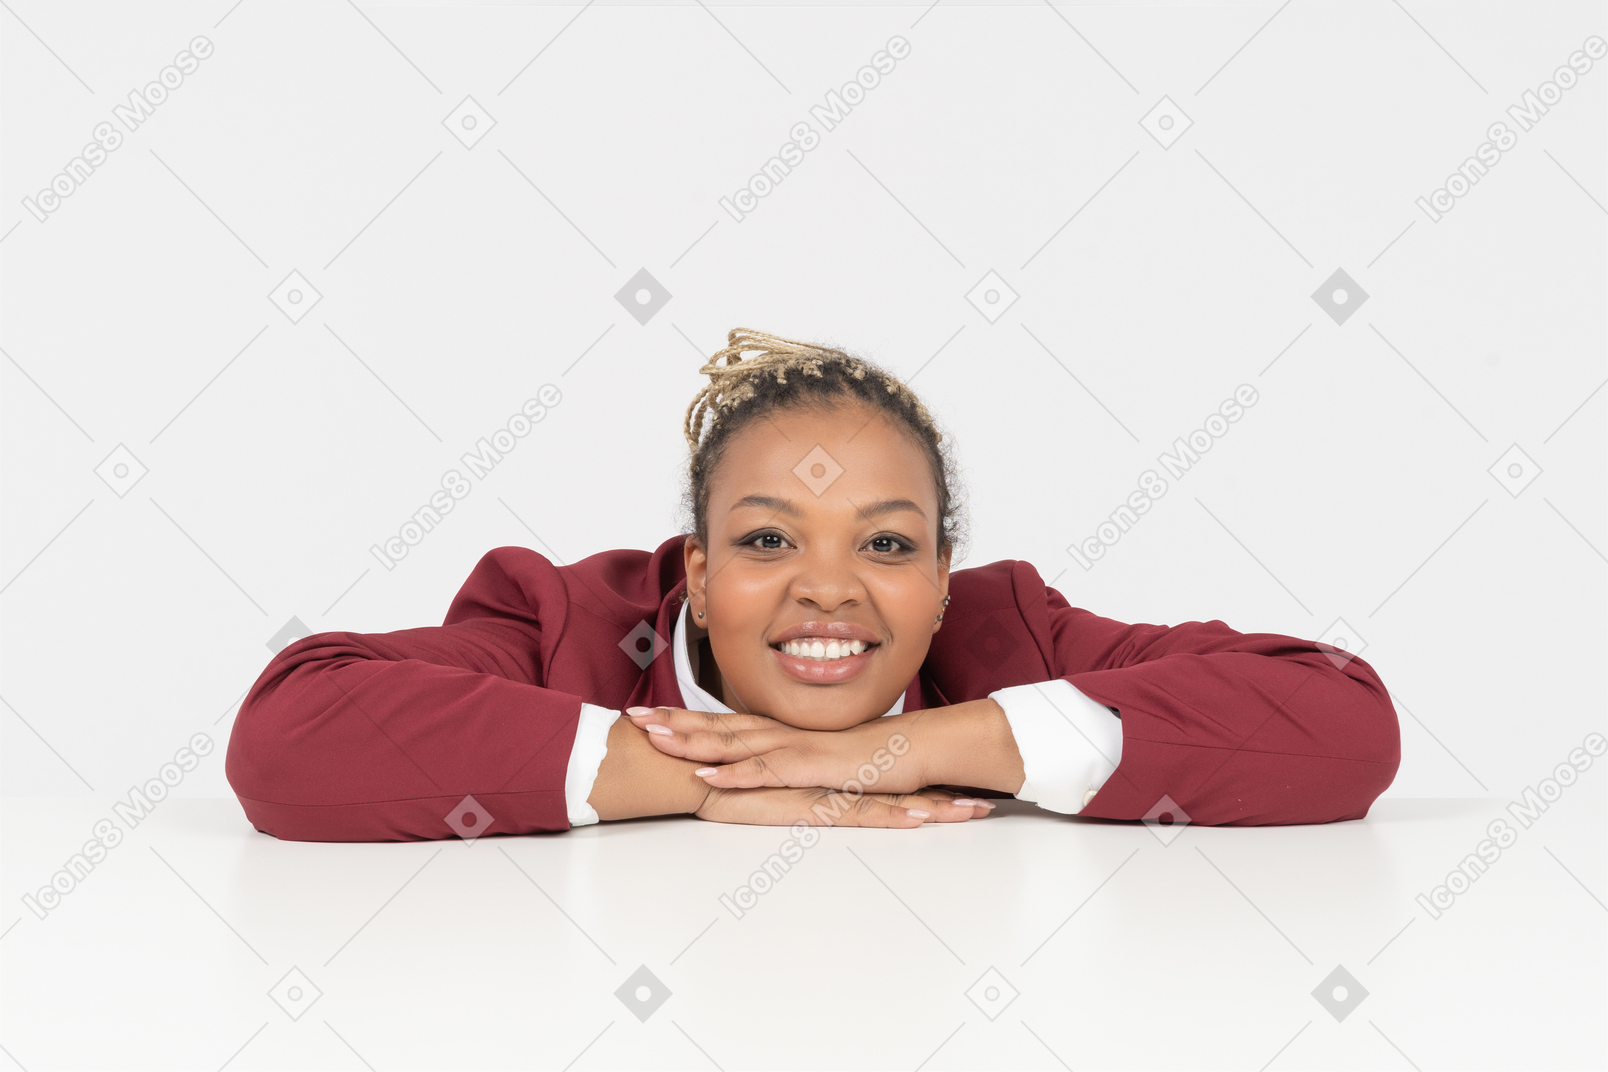 Retrato de um trabalhador de colarinho branco afro-americano feliz